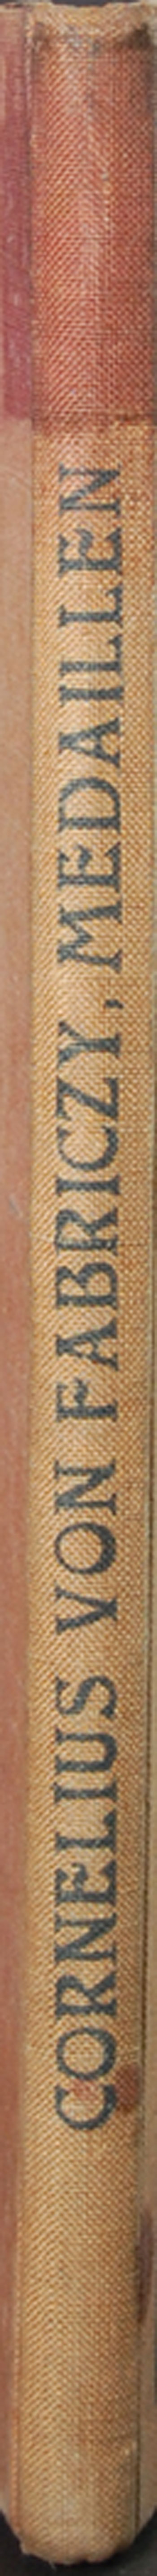 Fabriczy, Cornelius von - Medaillen der Italienischen Renaissance, Lipsk, tom IX pracy \Monographien des Kunstgewerbes\" Jeana Louisa Sponsela